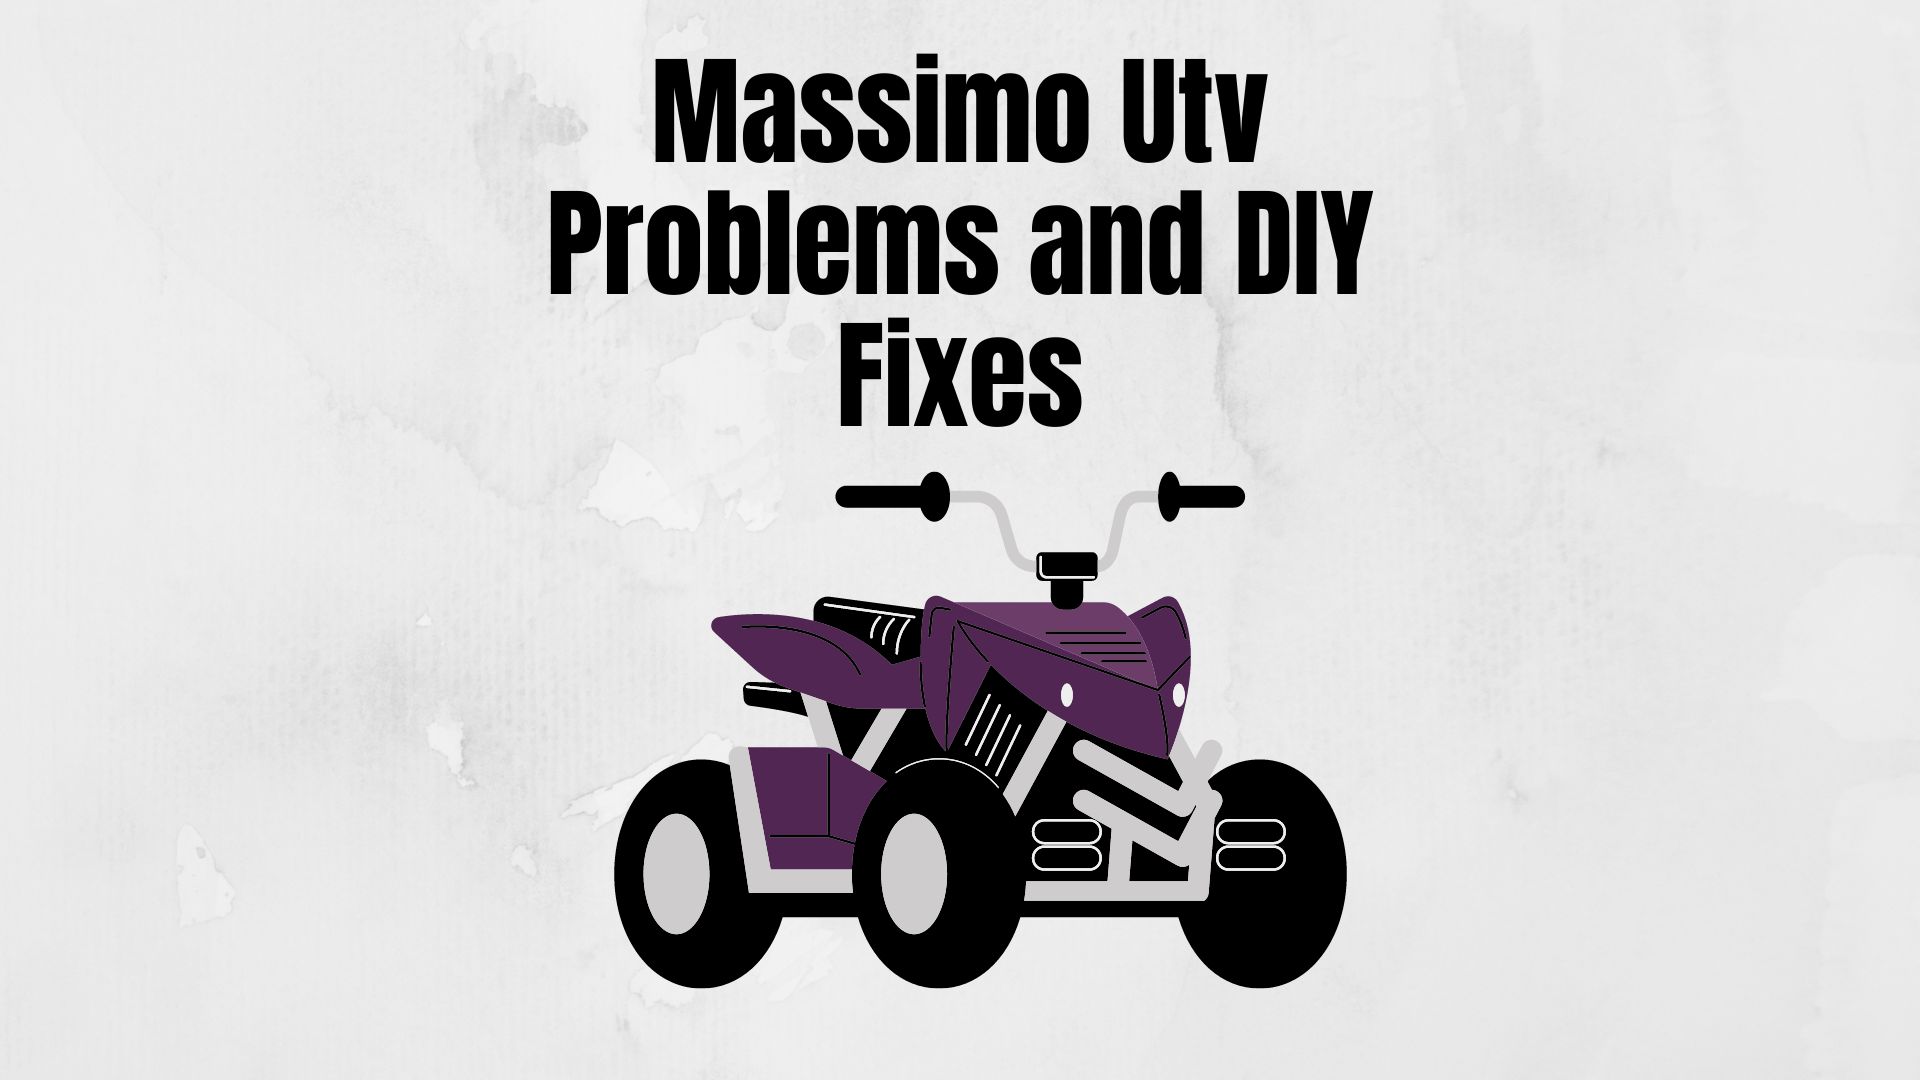 Massimo Utv Problems and DIY Fixes